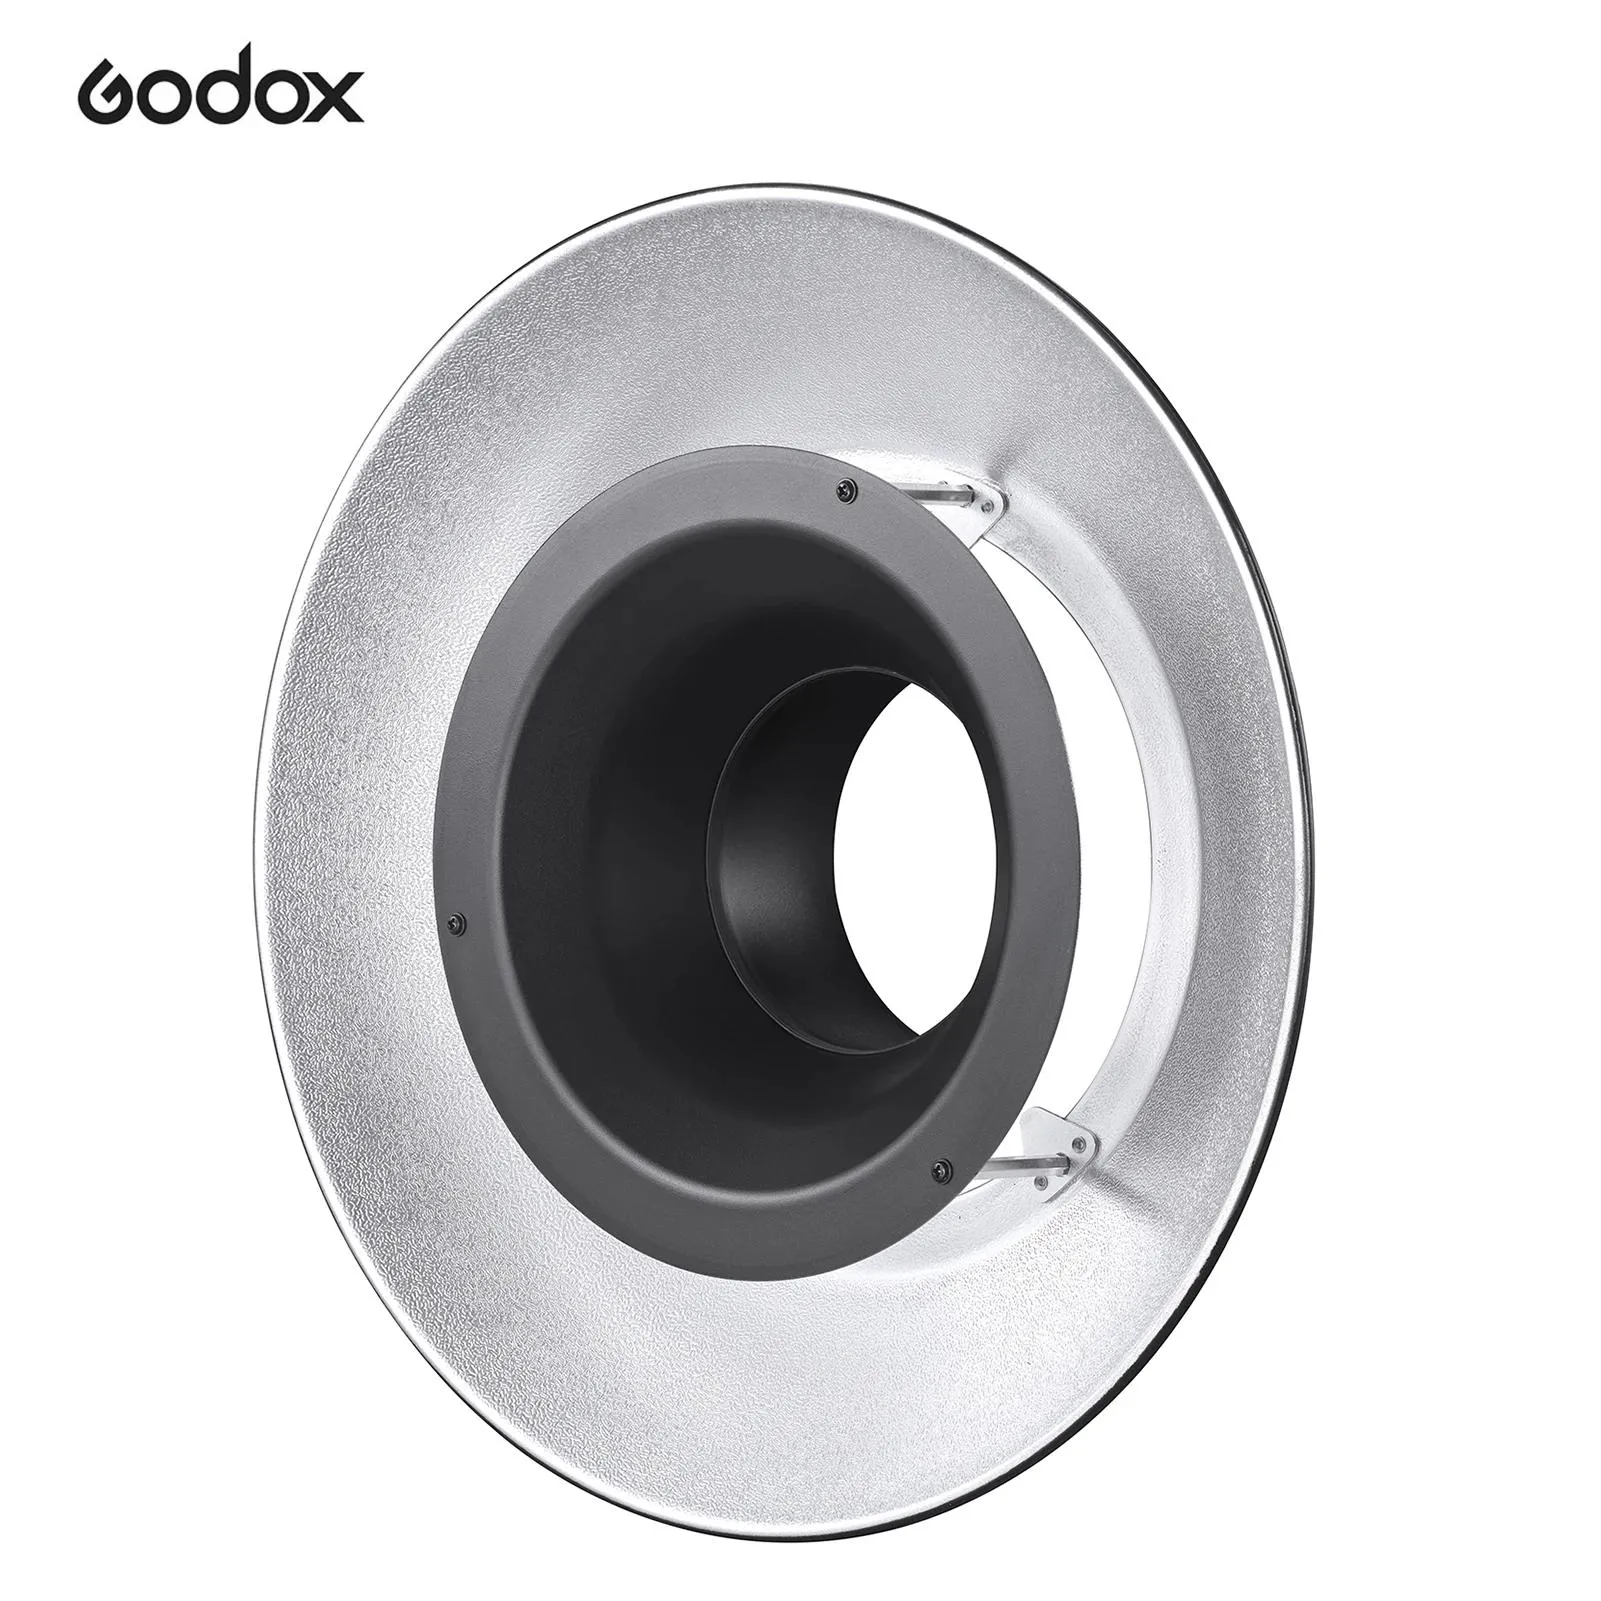 Materiale Godox Rft25s Riflettore con interni in argento per Godox R200 Ring Flash Head Photo Studio Accessori per fotografia all'aperto